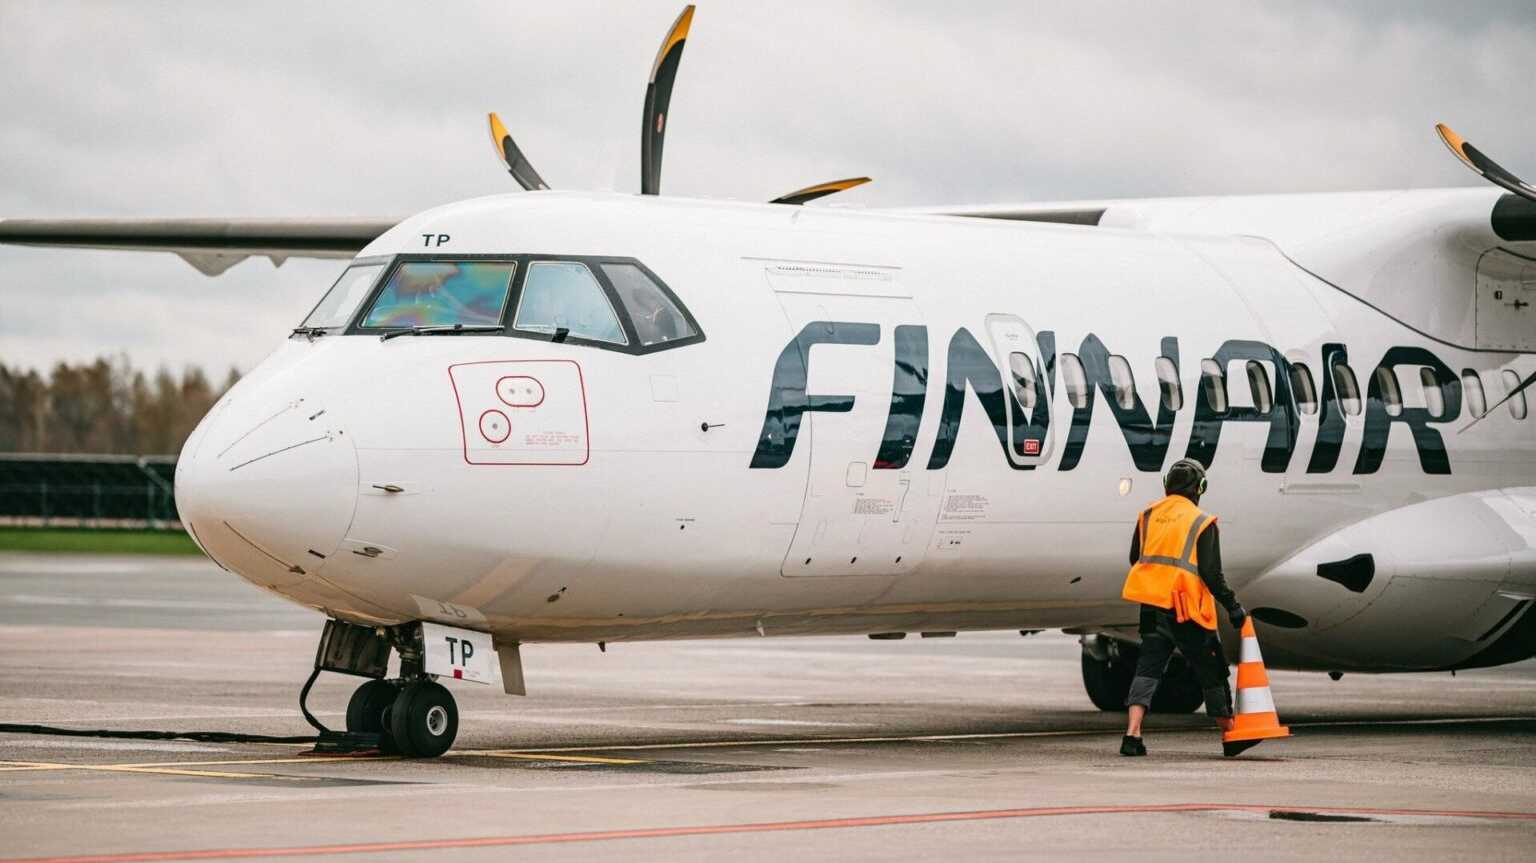 Flugzeug von Finnair auf Rollfeld